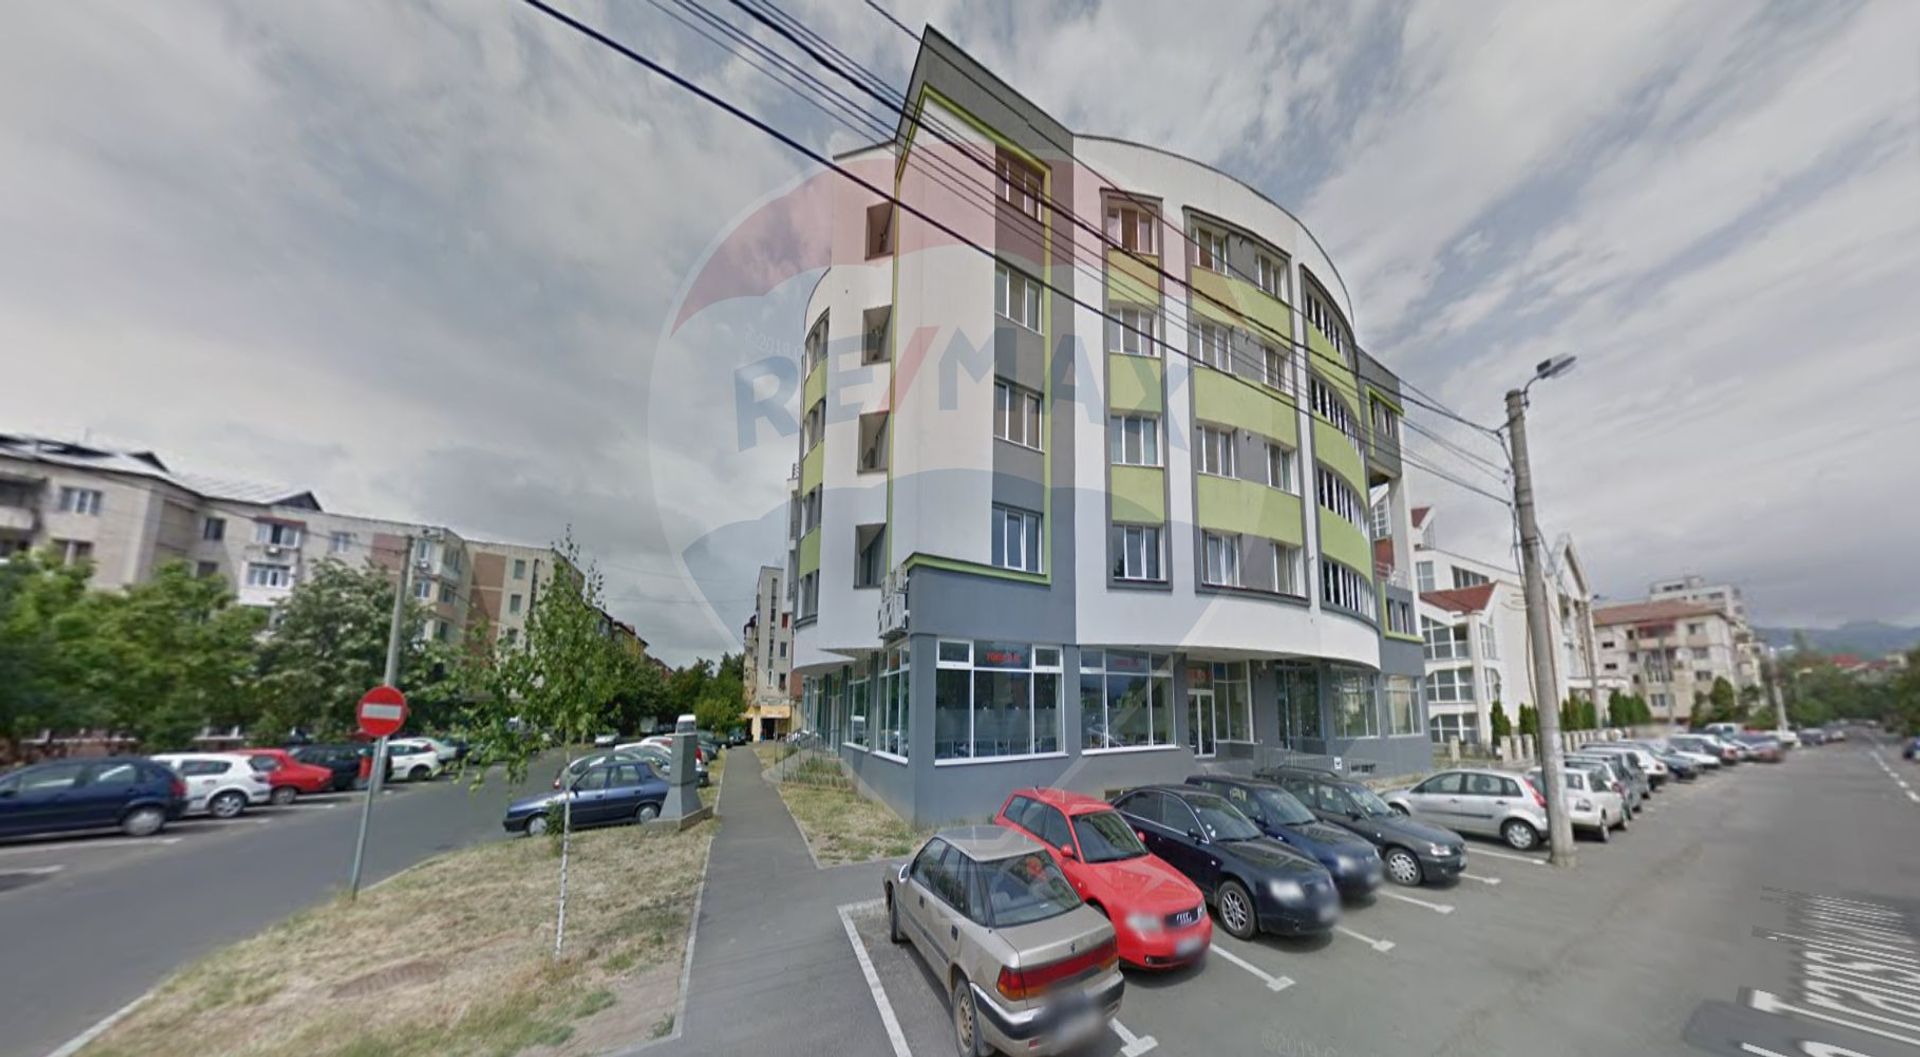 Spatiu comercial 332.13 mp inchiriere in Bloc de apartamente, Maramures, Baia Mare, Central